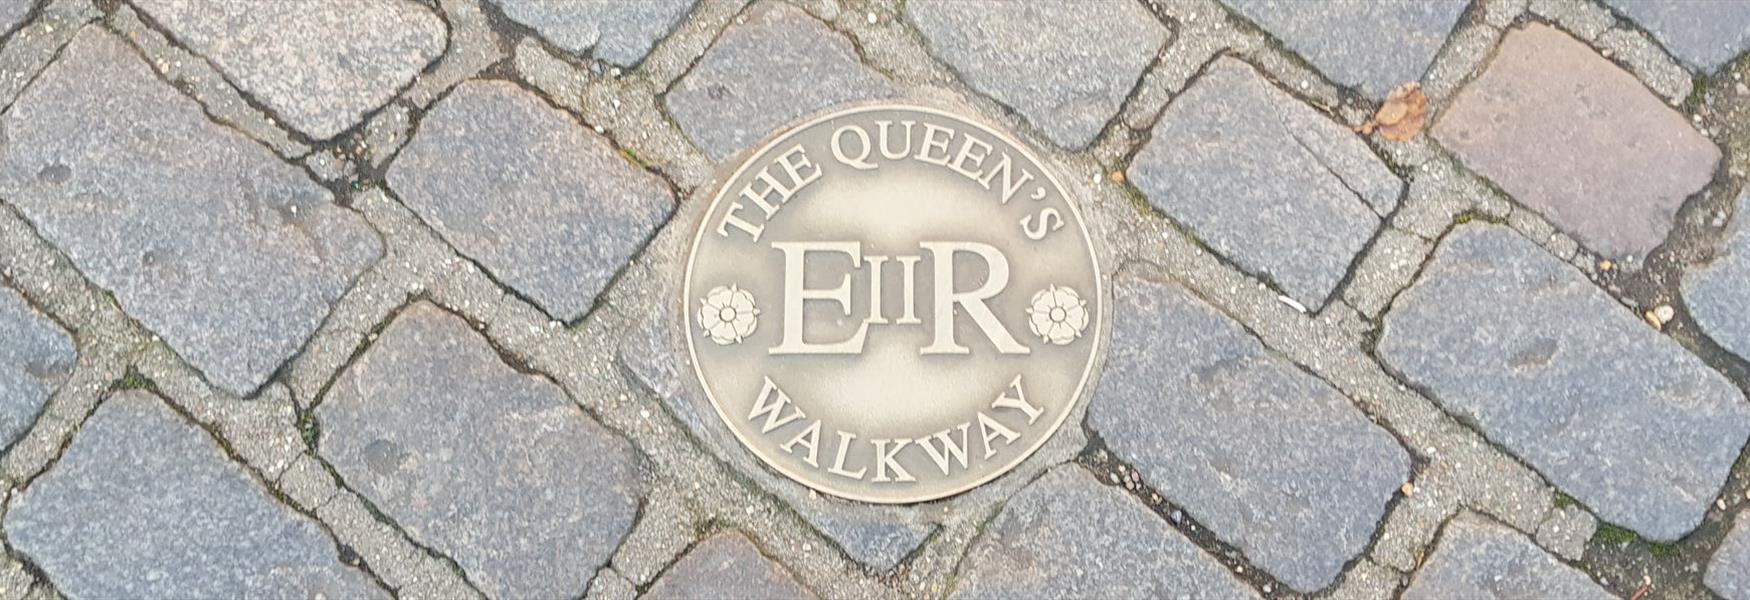 Follow The Queen's Walkway